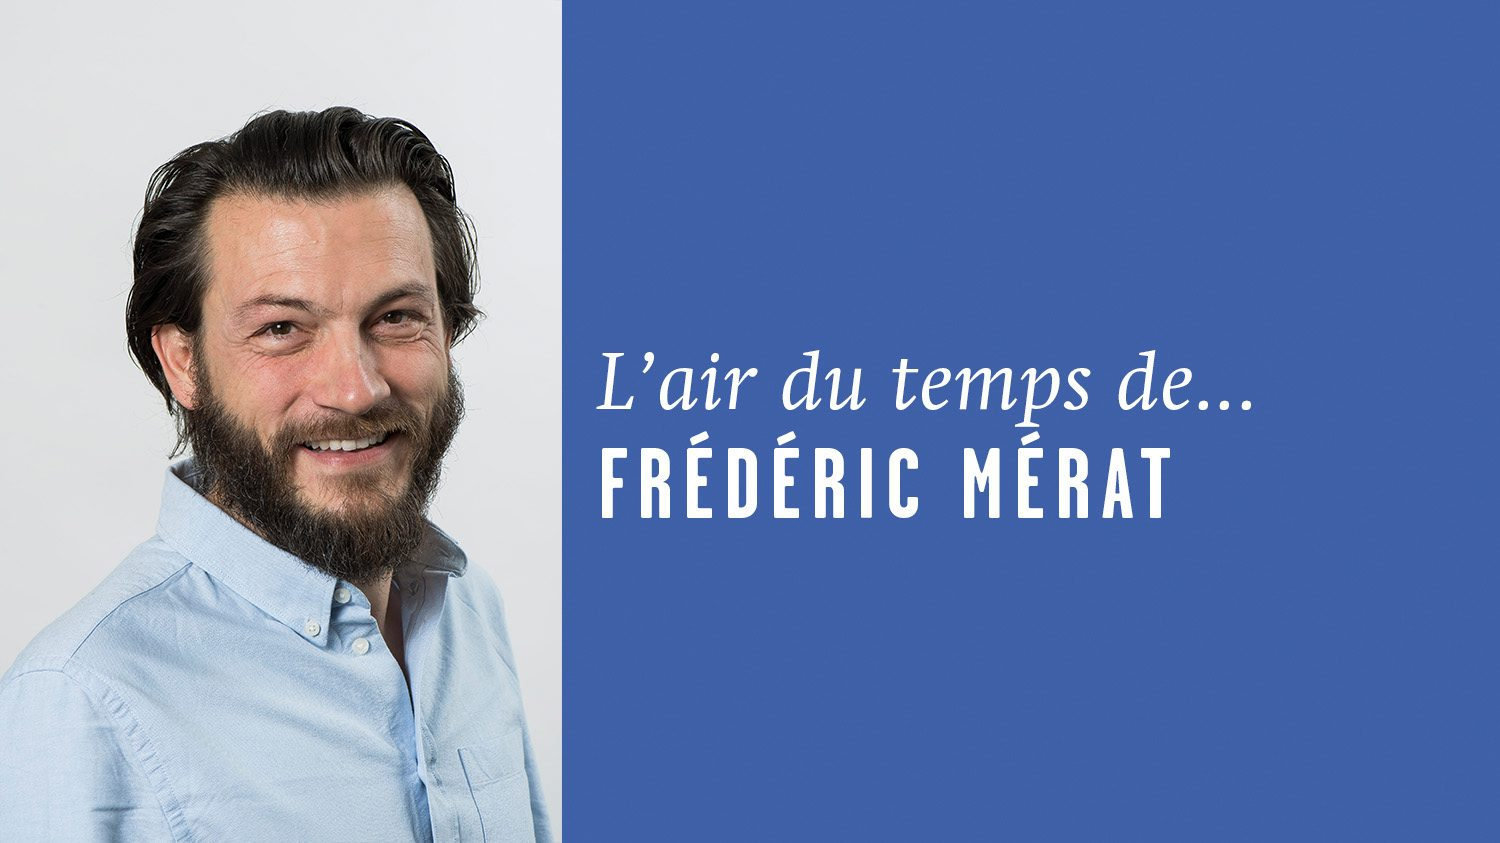 AirDutemps-FredericMerat (6)